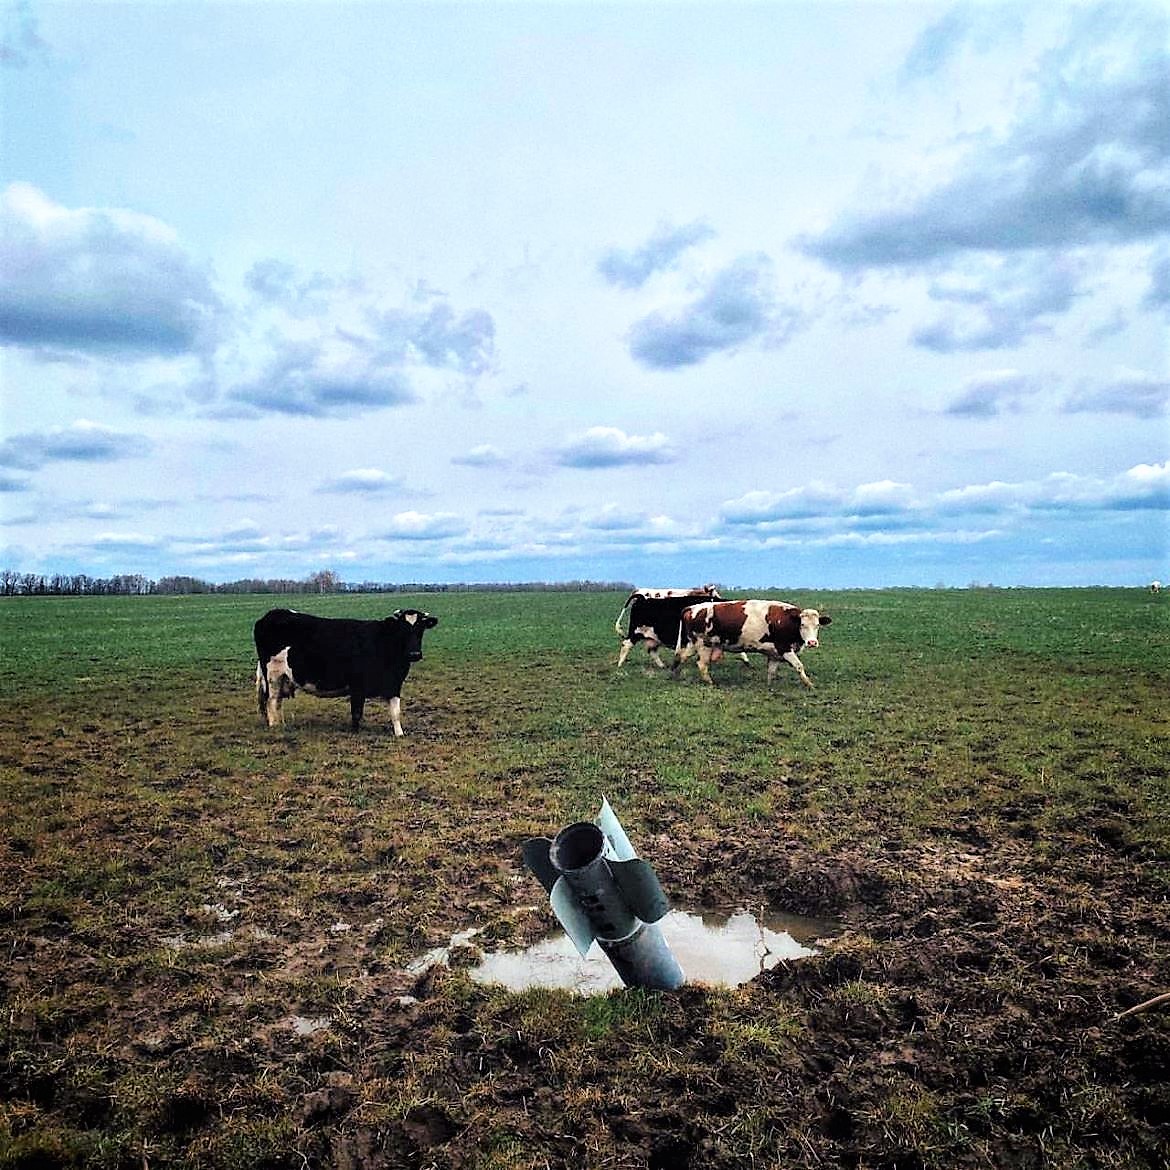 cows graze near rockets in field